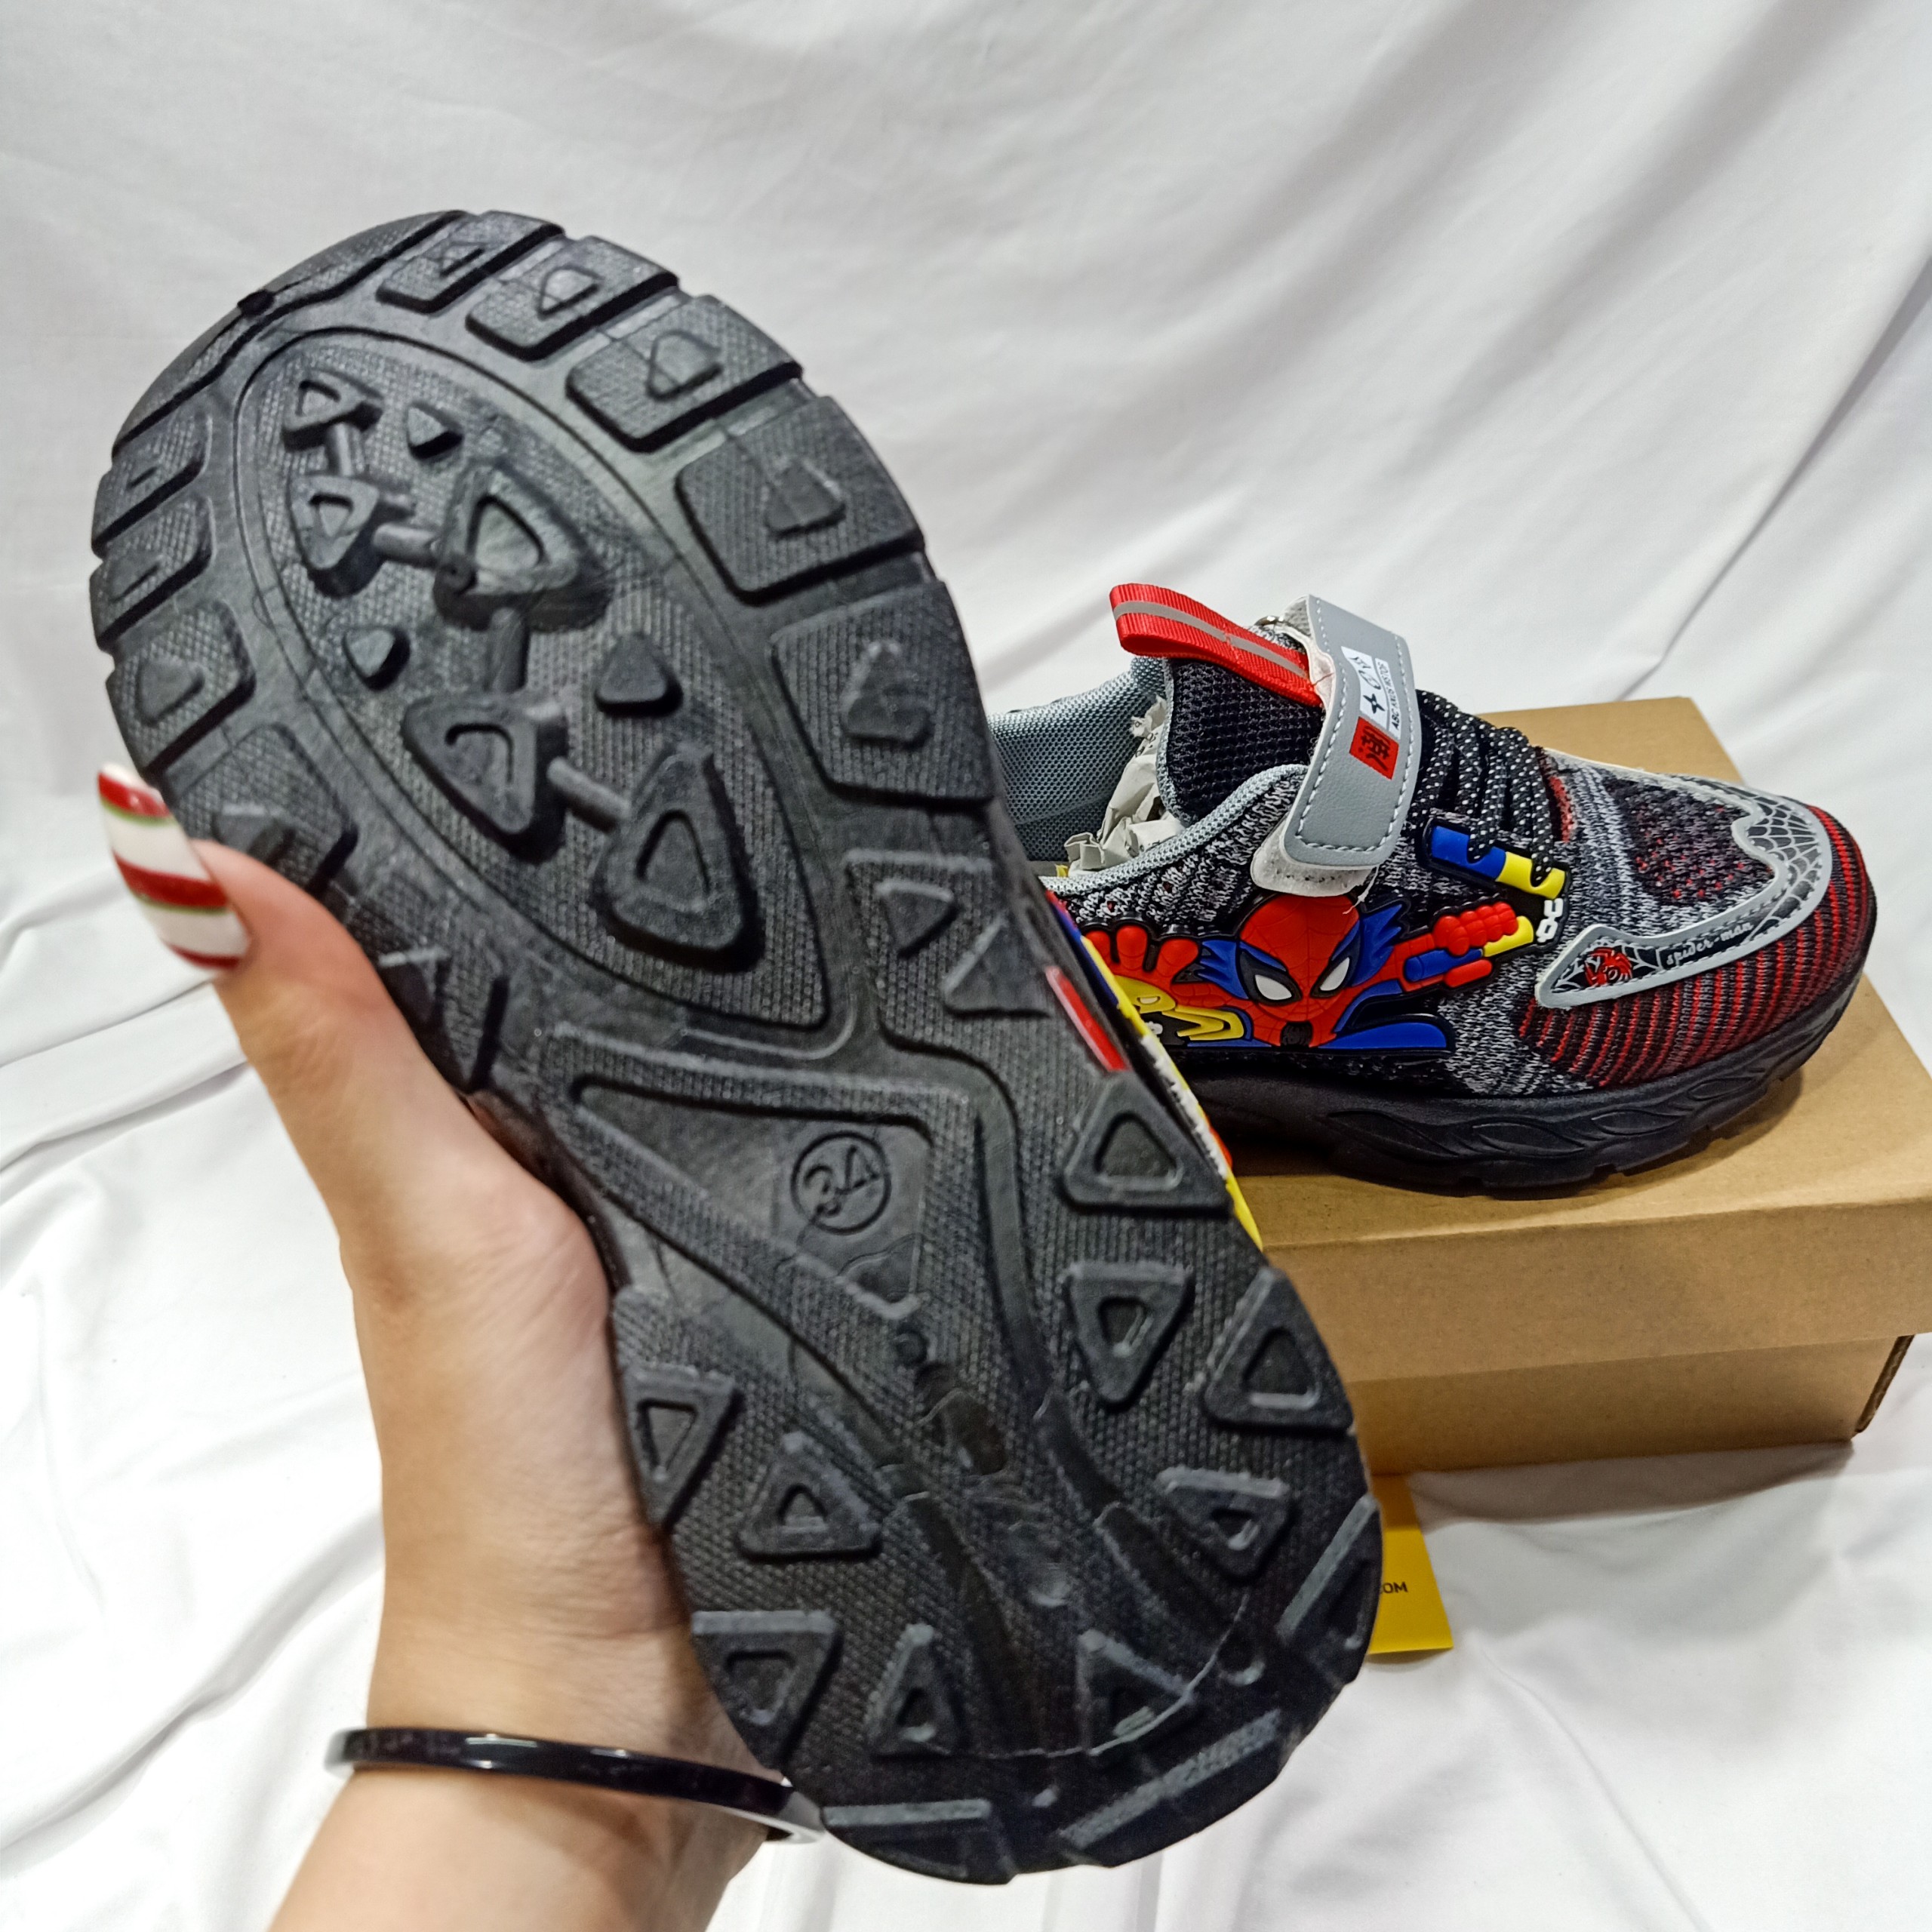 Giày Thể Thao Em Bé Trai Siêu Nhân Nhện Spider Man Màu Đen Duy Nhật Store Sang Uzzang Đẹp Êm Sneaker Bata Trend Size Lớn